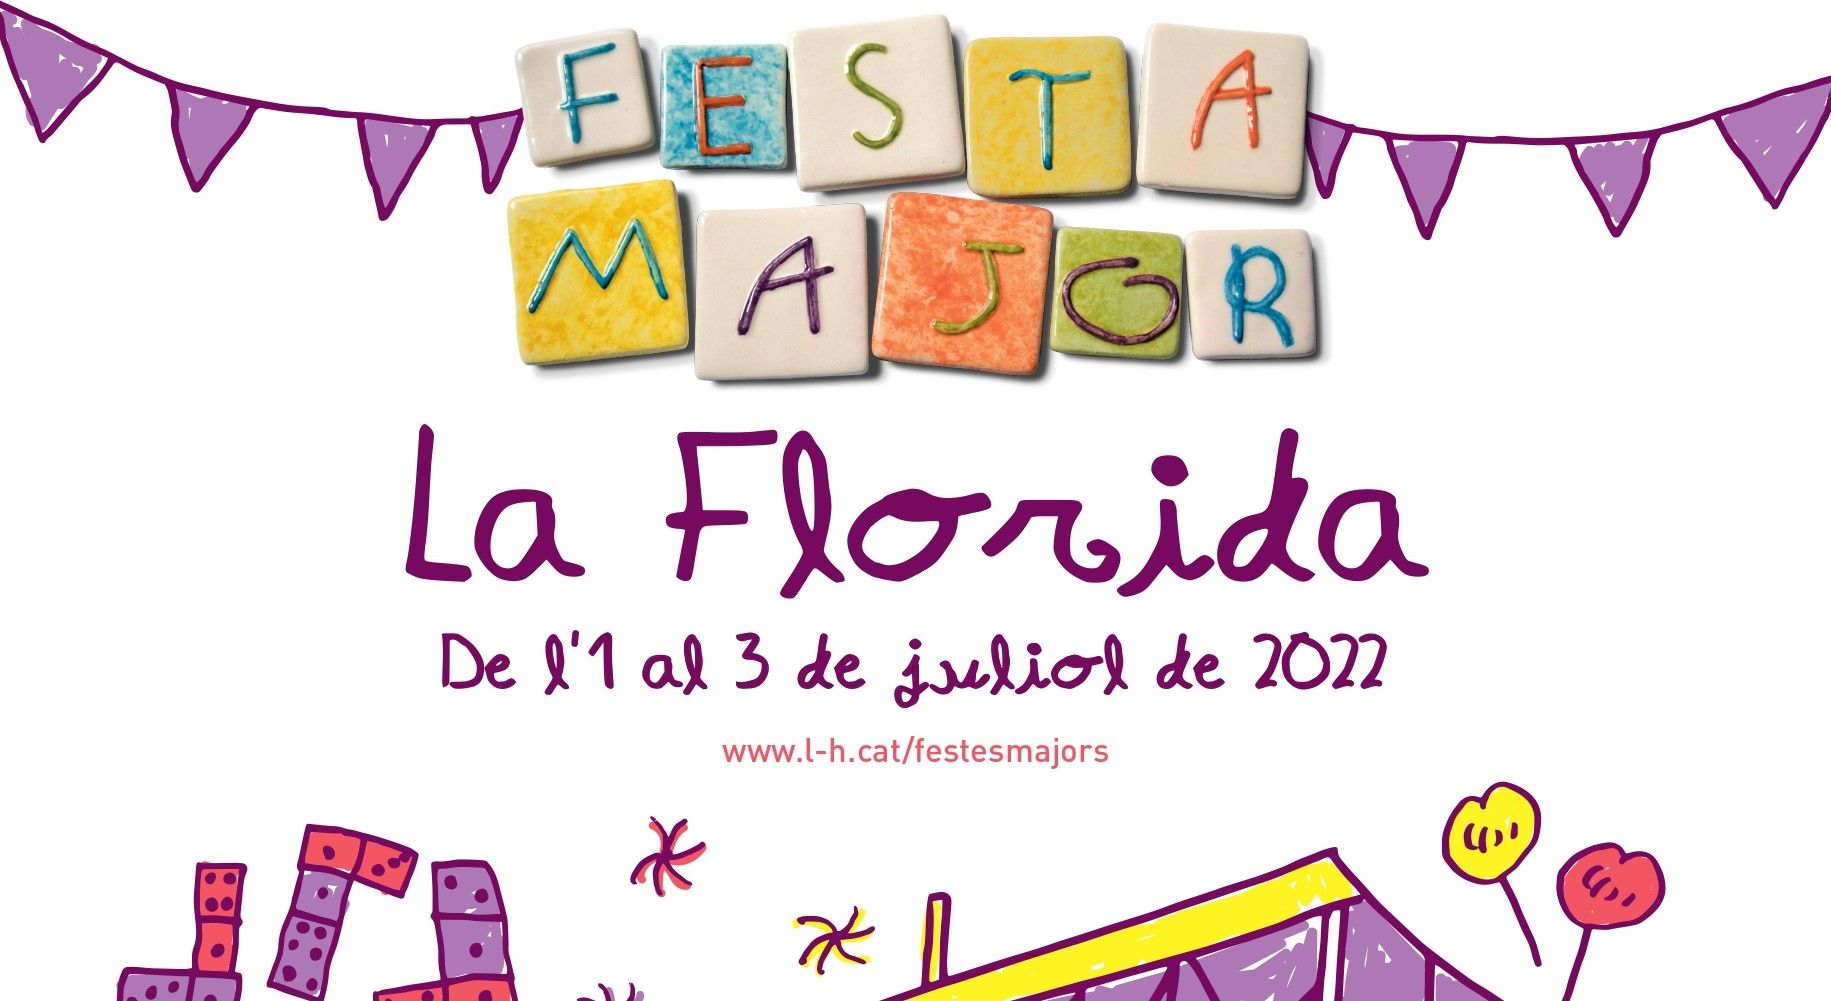 Cartel de la Fiesta Mayor del barrio de La Florida de L'Hospitalet de Llobregat.